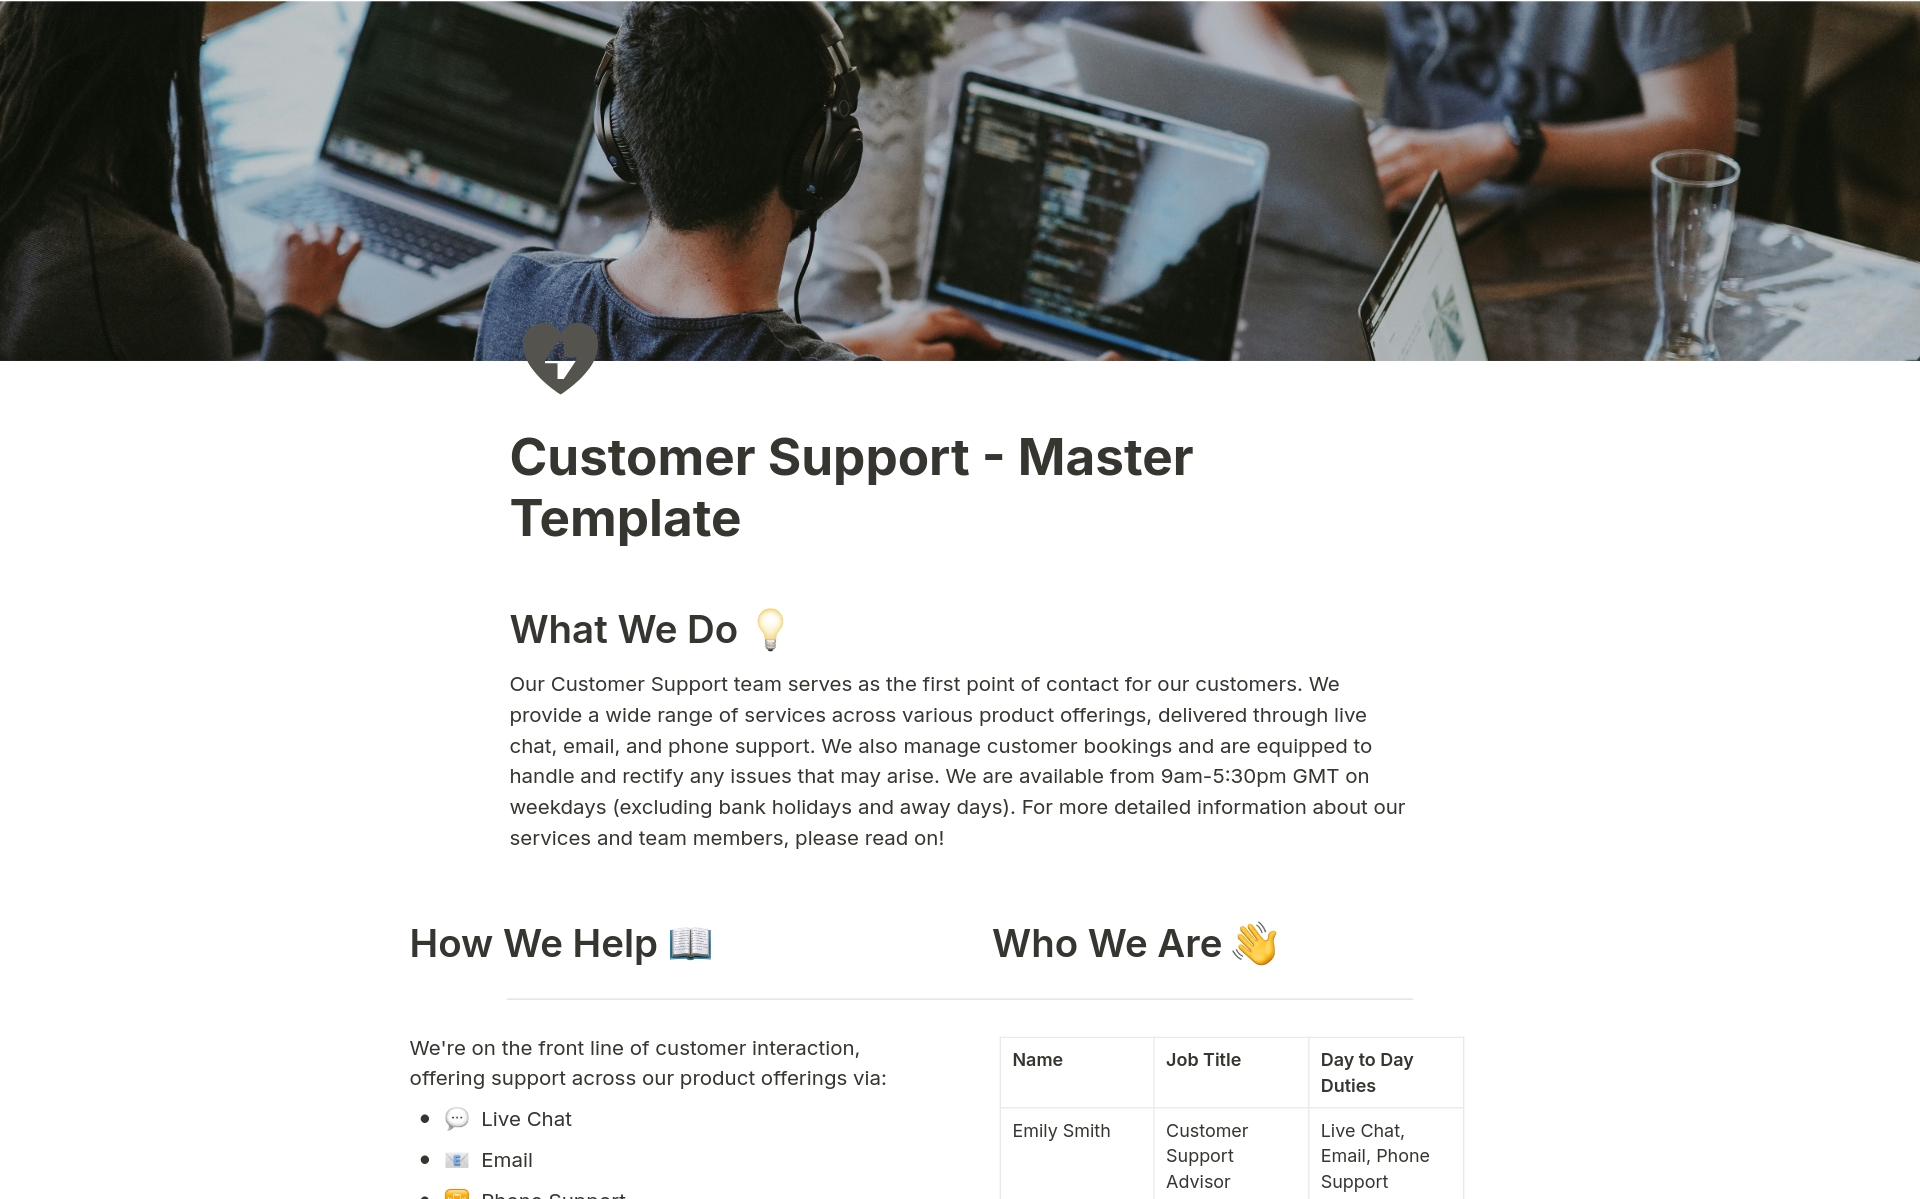 Vista previa de una plantilla para Customer Support Management